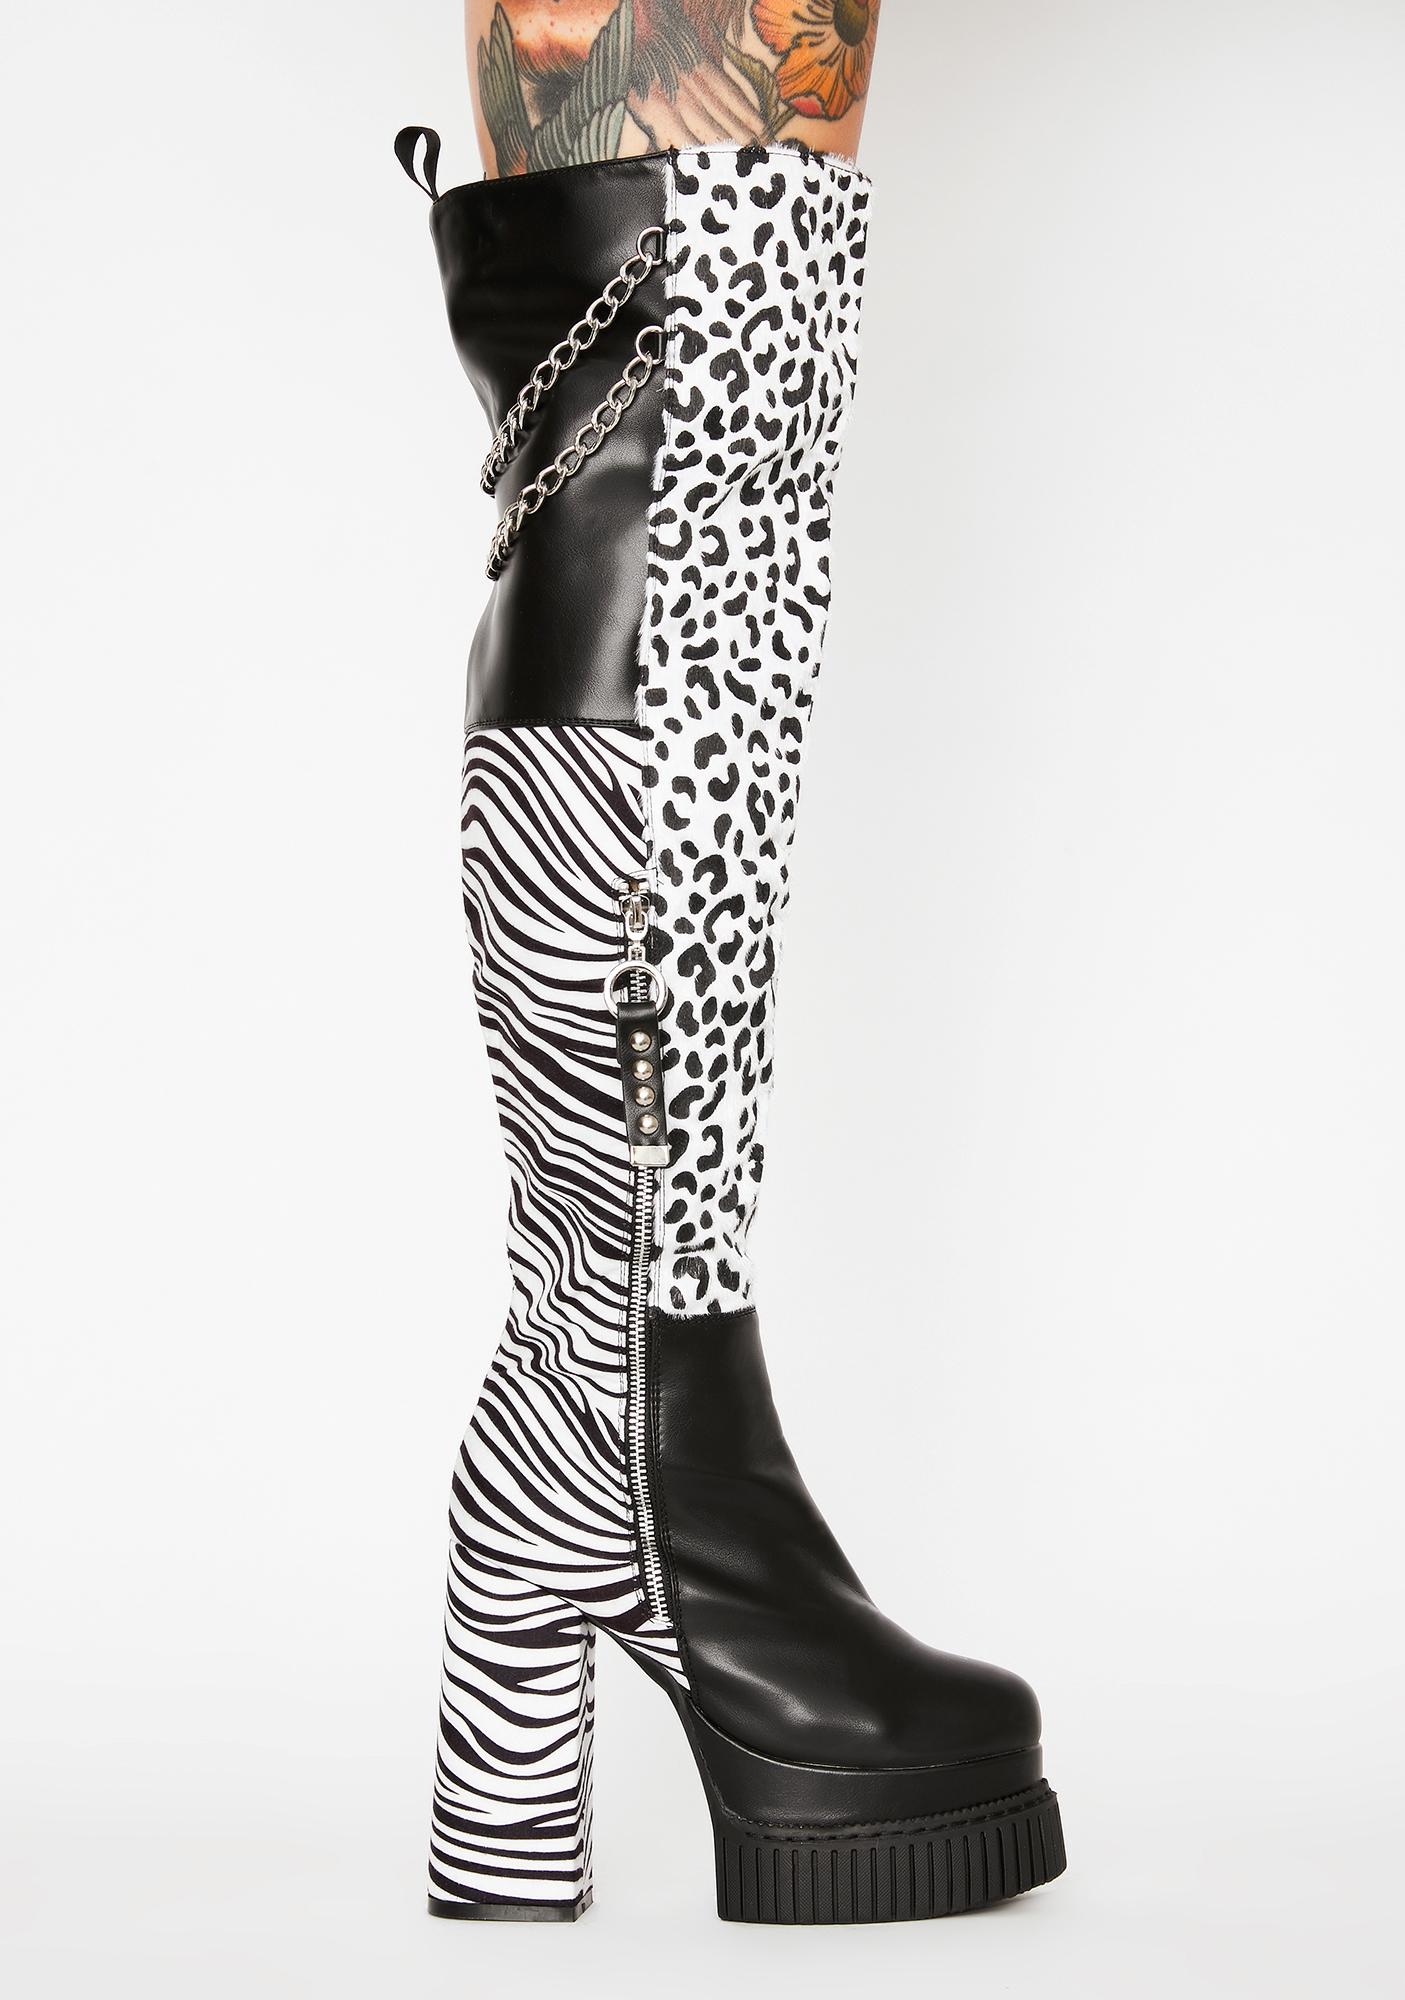 zebra thigh high boots